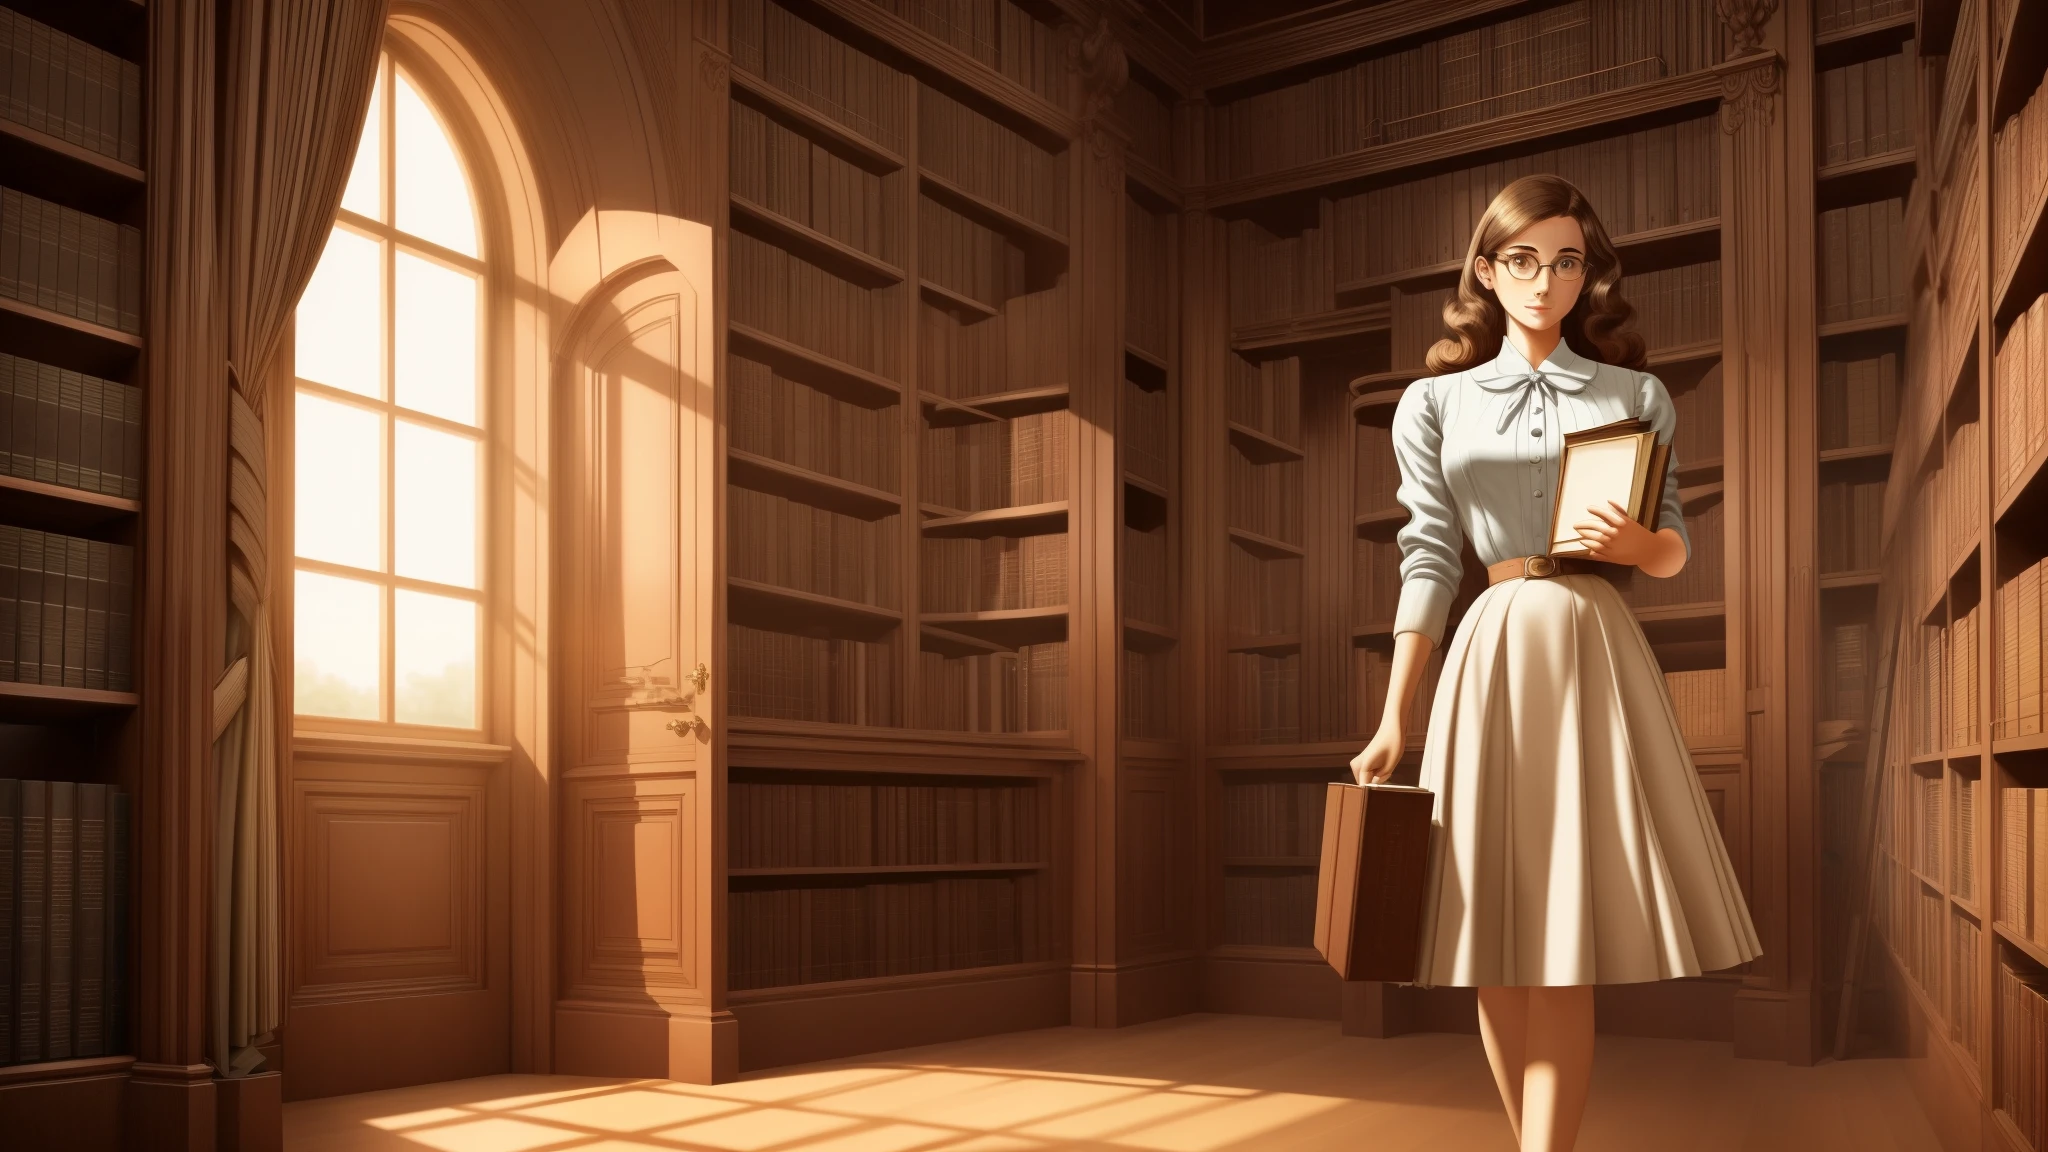 Реалистичный концепт-арт стоящей европейской студентки колледжа около 25 лет., носить большие очки, красивое лицо, детальные карие глаза, держит в руках много книг, она держит в руках много книг, она носит с собой большую стопку книг, теплый фон в библиотеке, с большими окнами, реалистичная иллюстрация, мода 1950-х годов, Степфордская жена, шедевр.